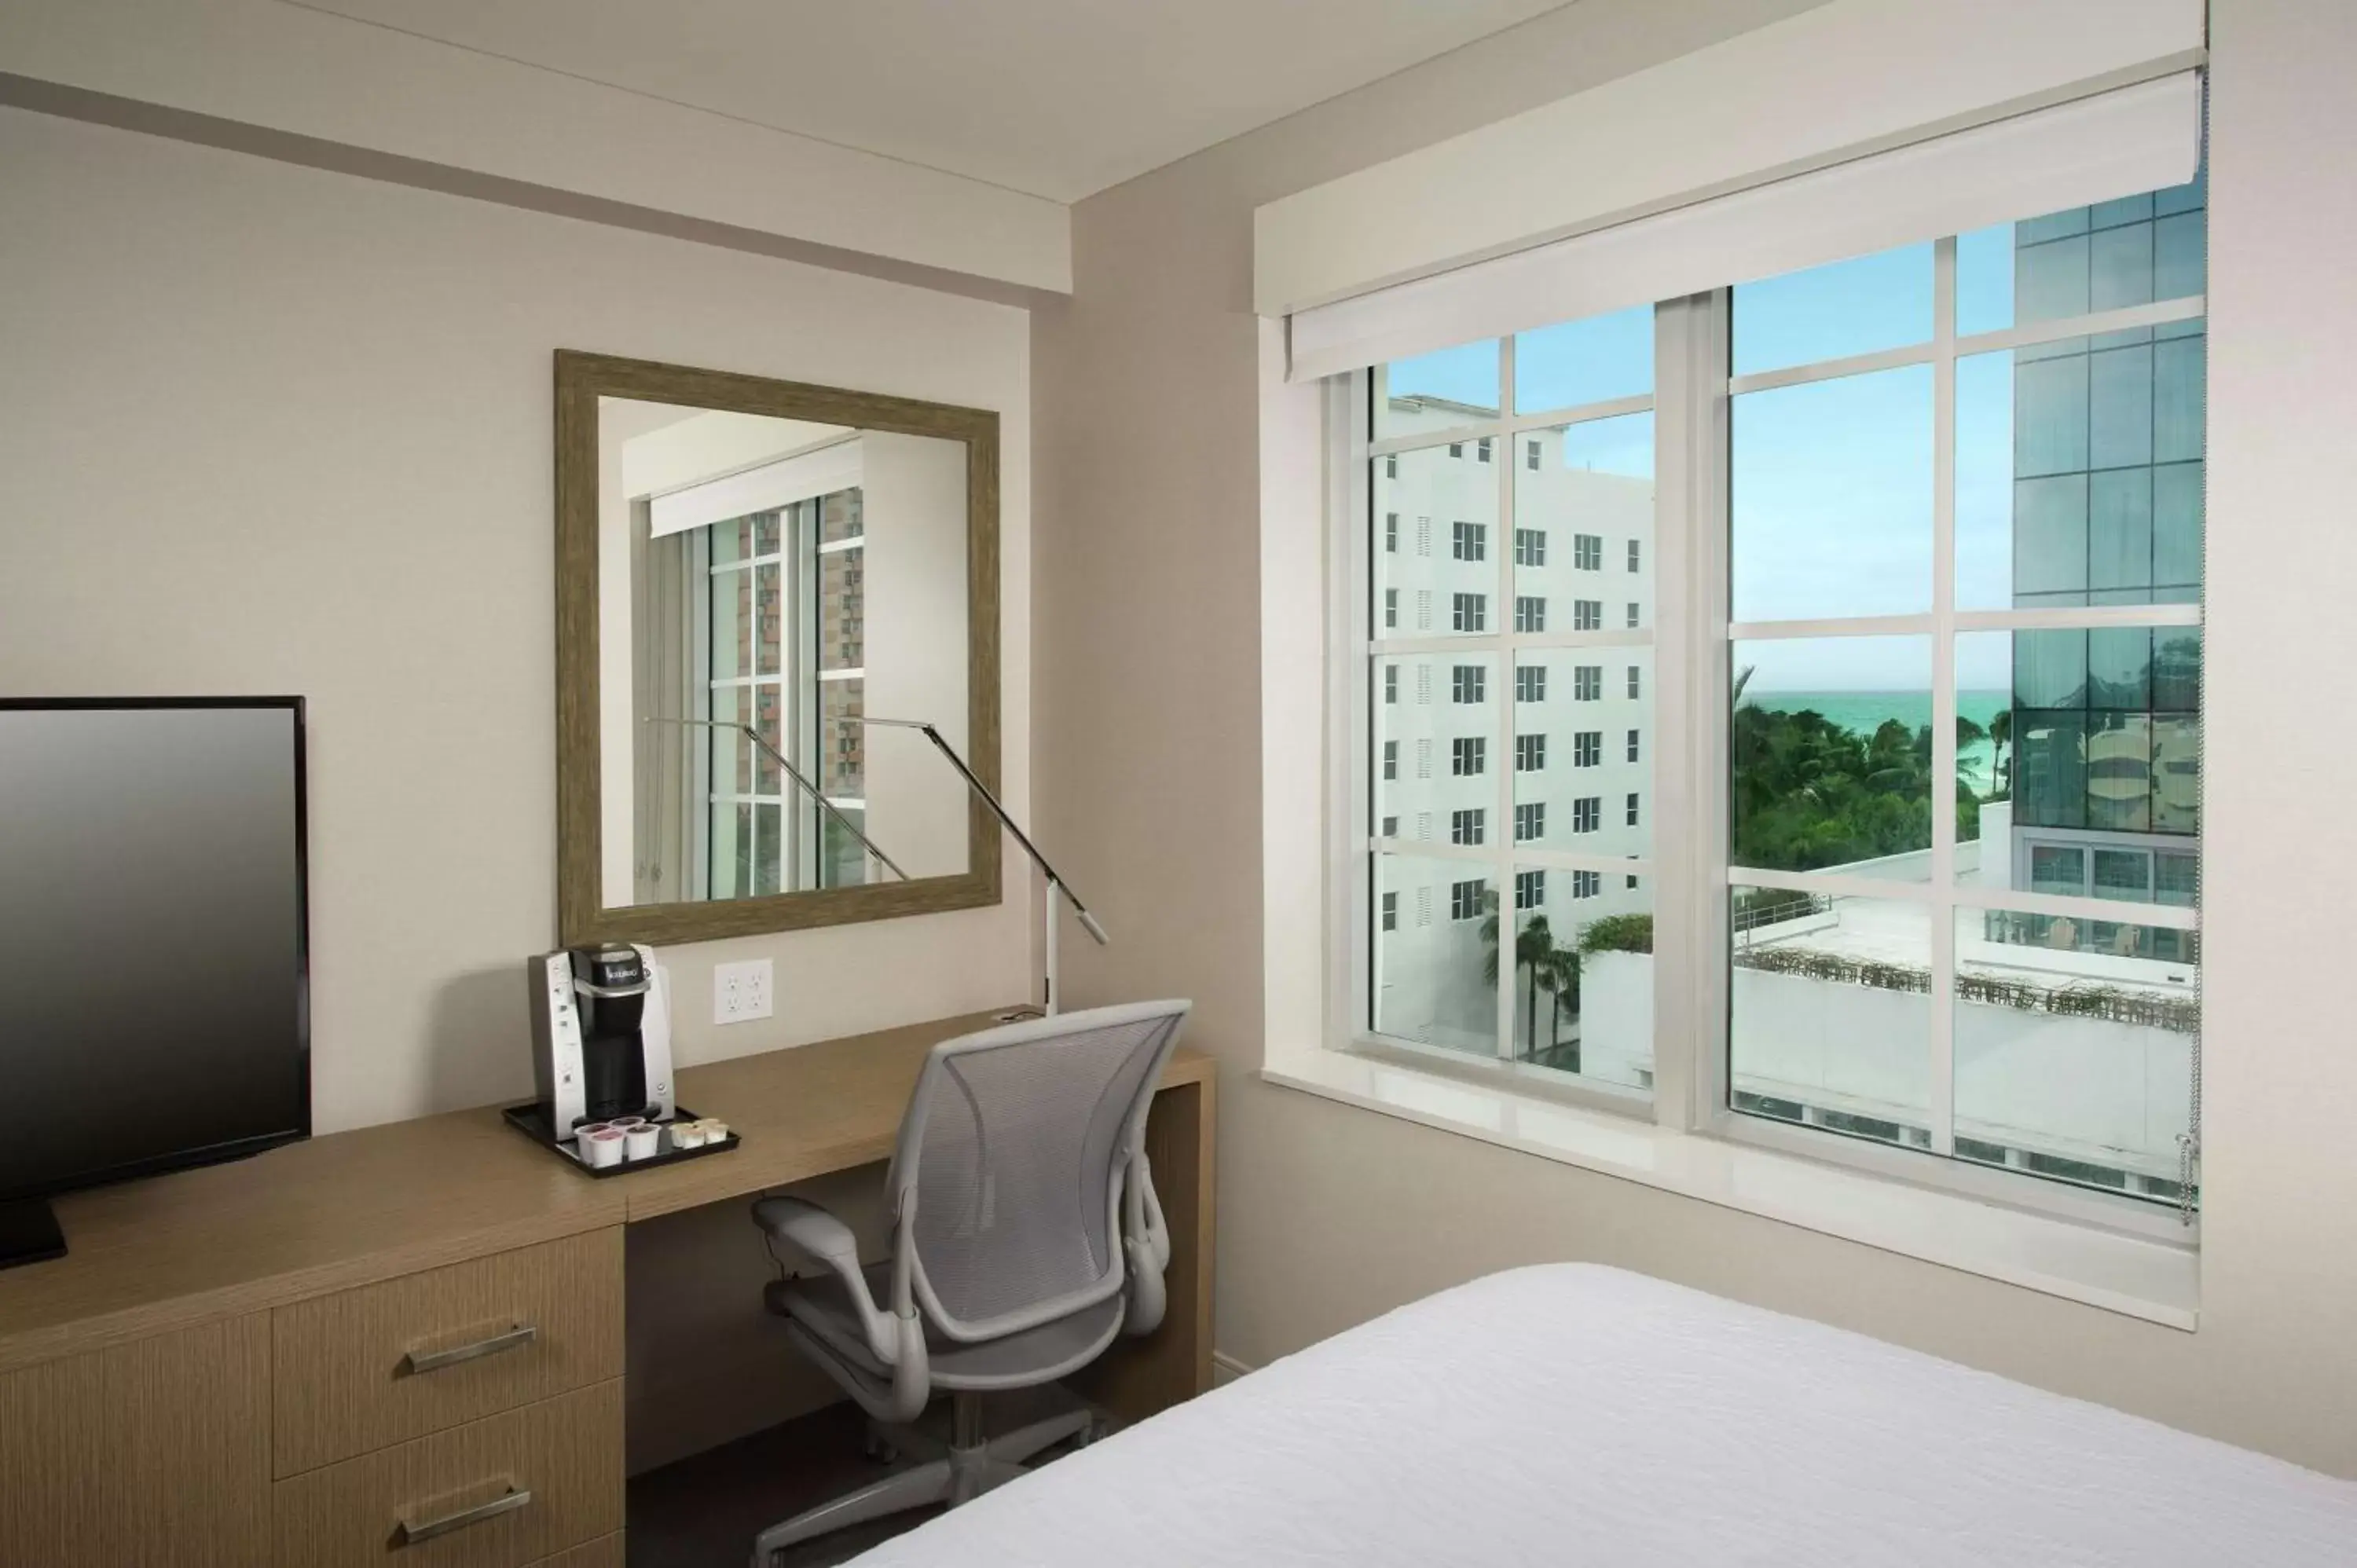 Bedroom, TV/Entertainment Center in Hilton Garden Inn Miami South Beach